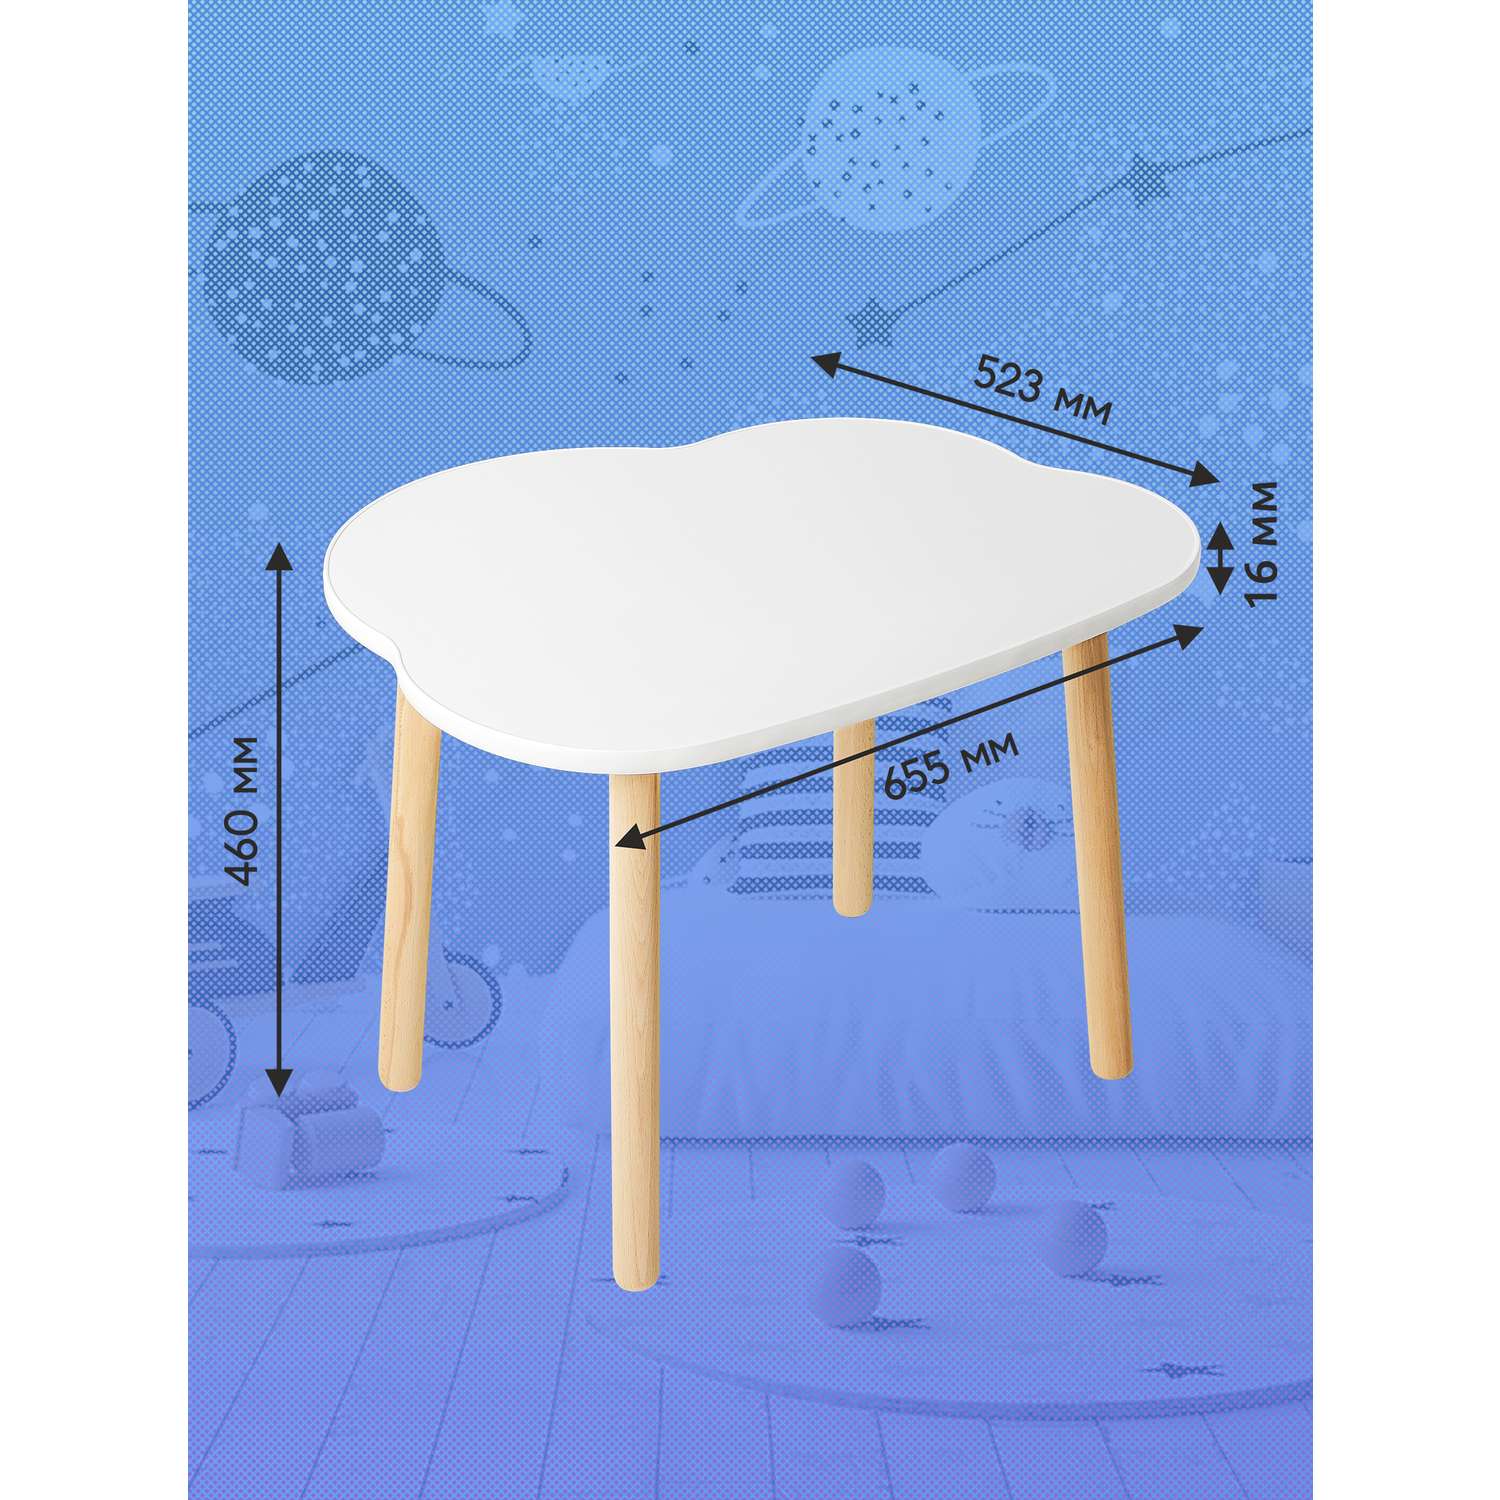 Детский стол и стул из дерева Мега Тойс Облако комплект деревянный белый столик со стульчиком набор мебели для детской комнаты - фото 2